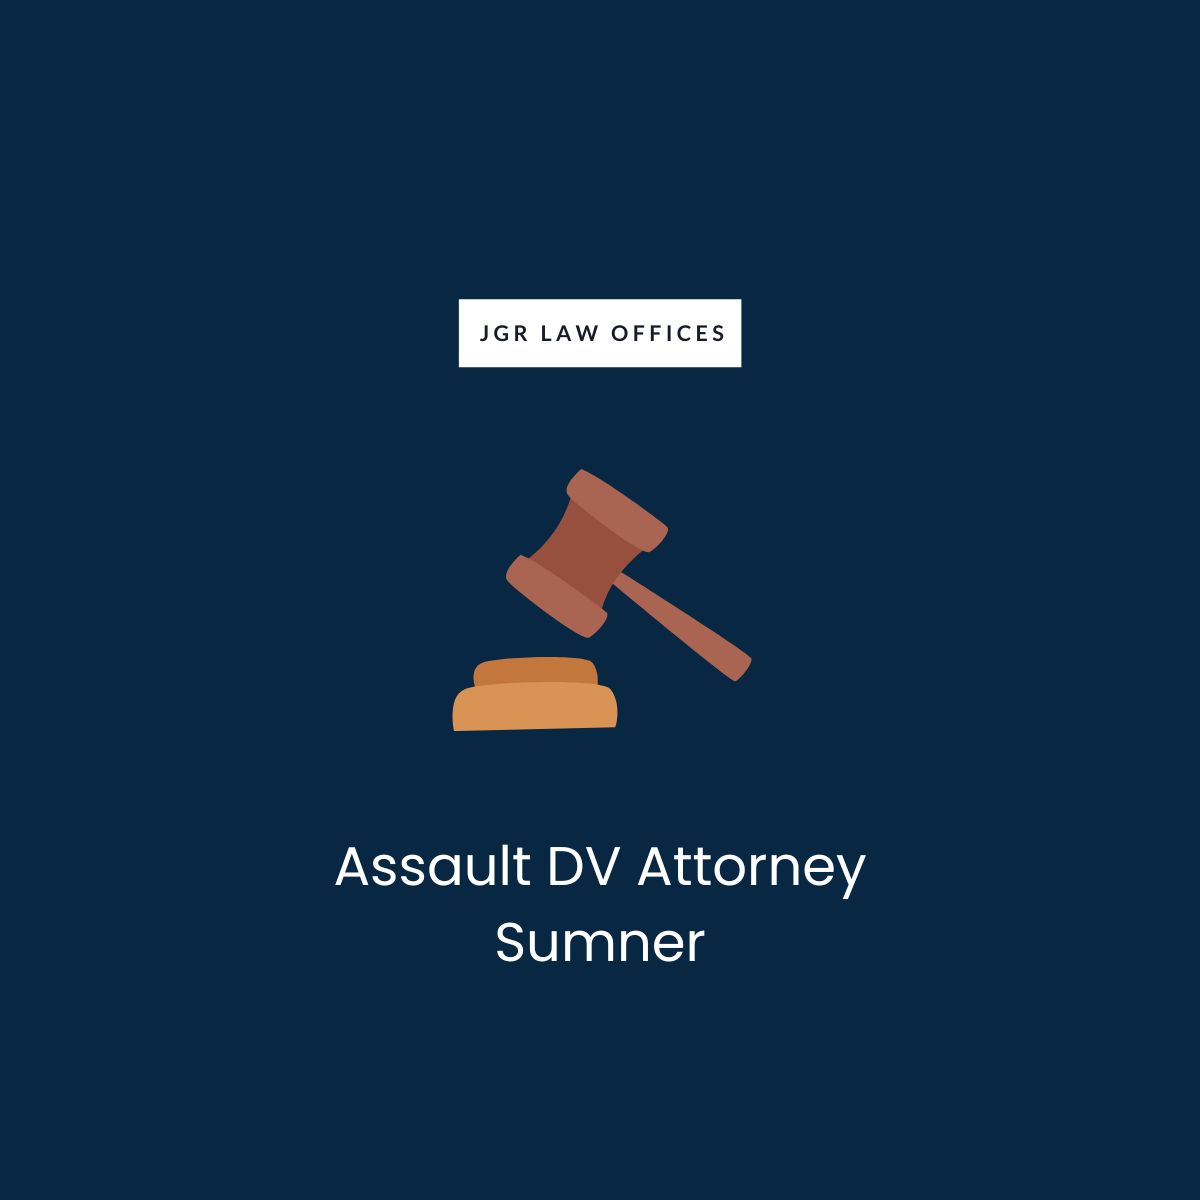 Assault DV Attorney Sumner